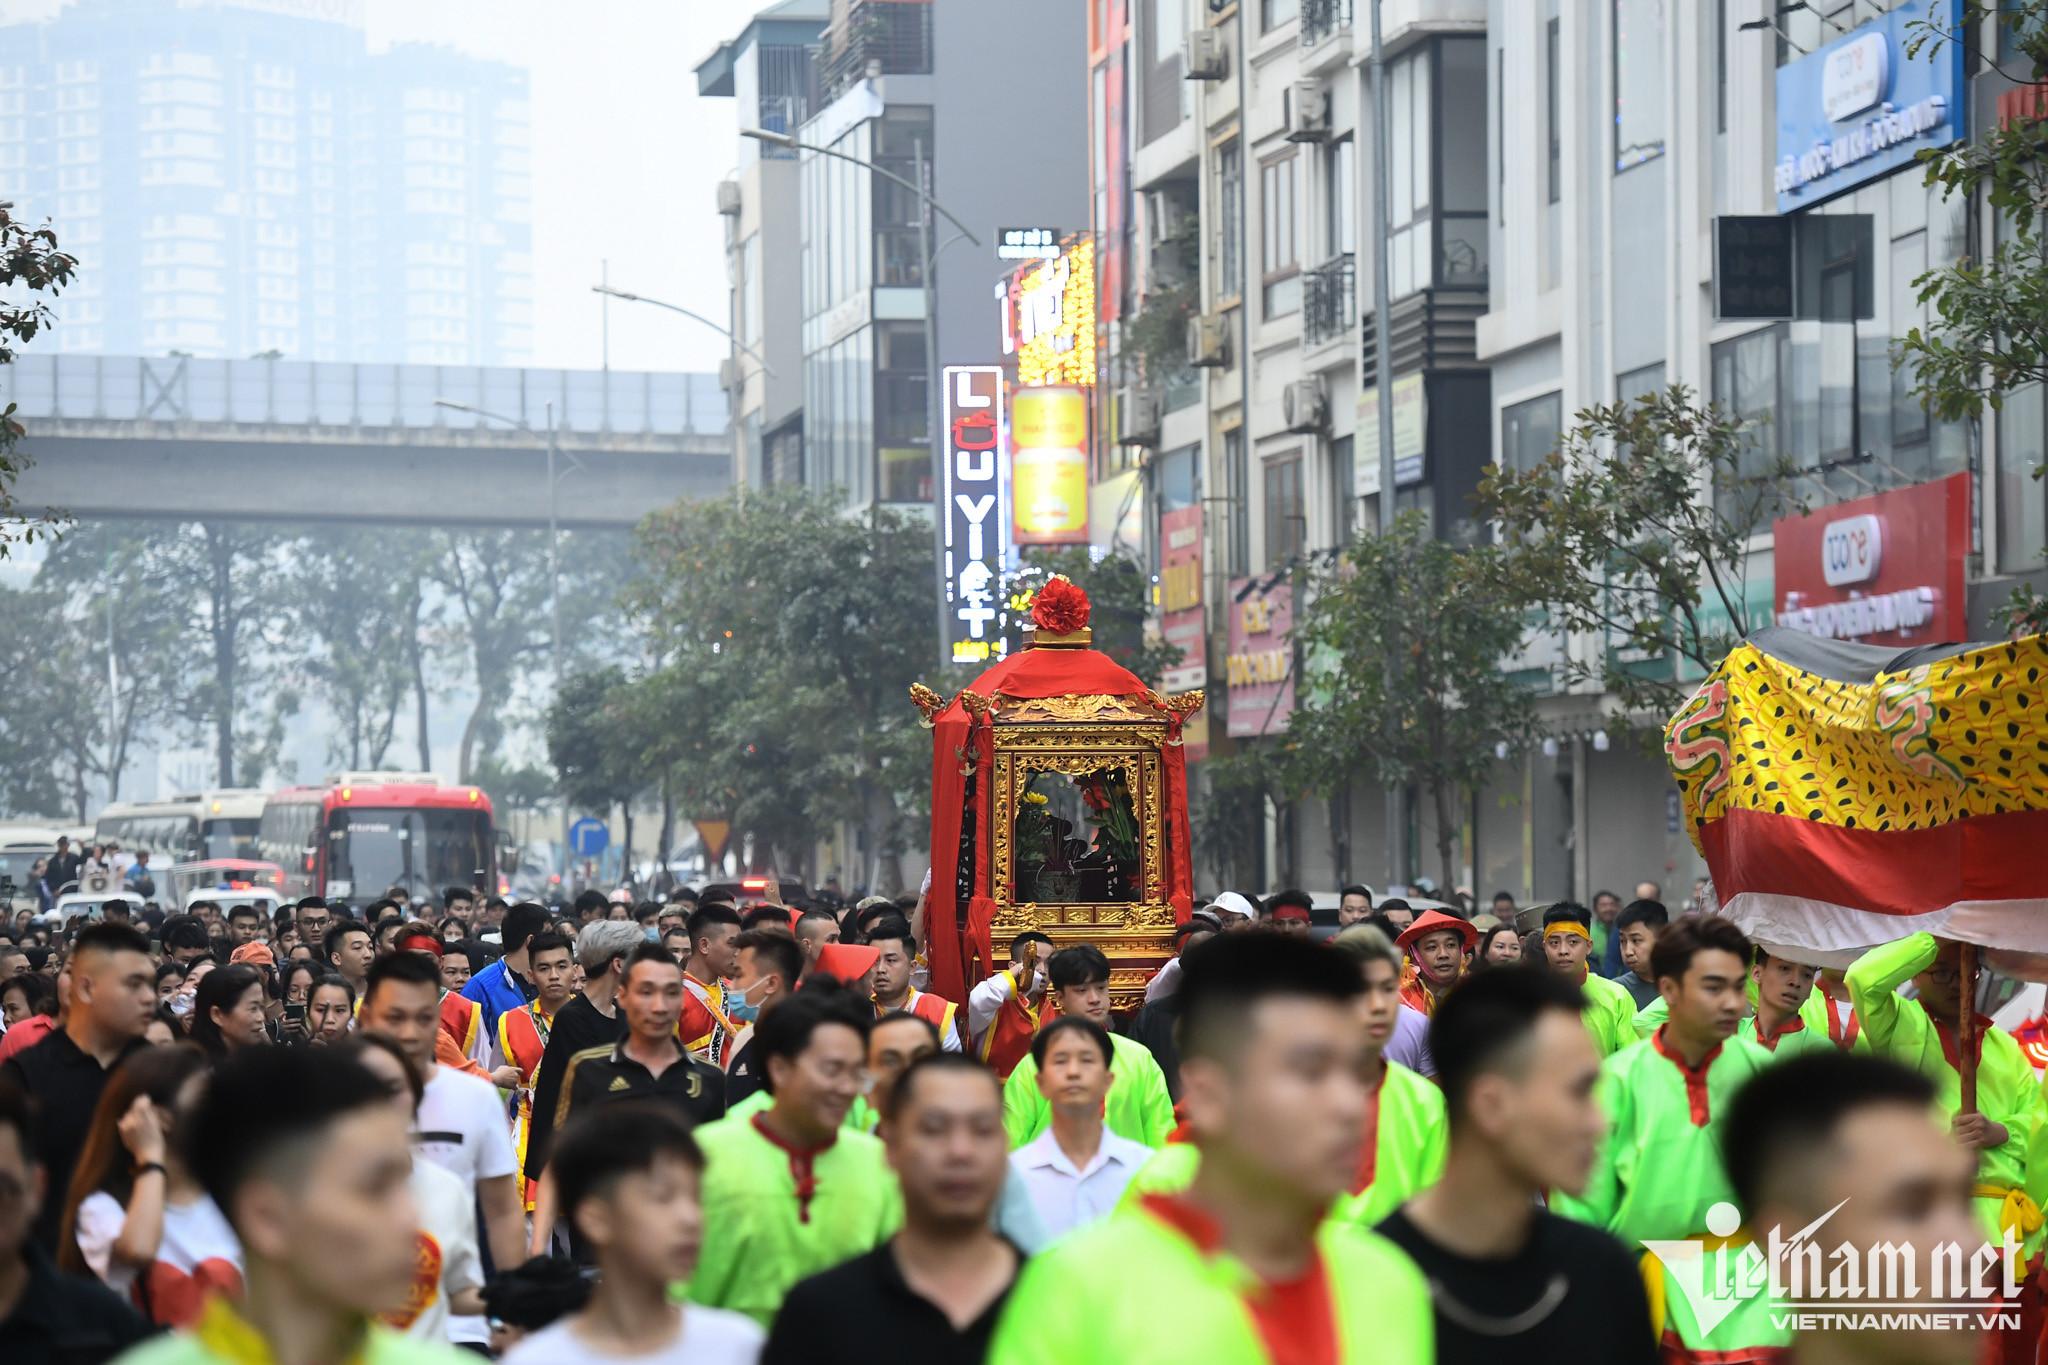 Kỳ lạ màn rước kiệu như chạy marathon trên đường phố Hà Nội - 2